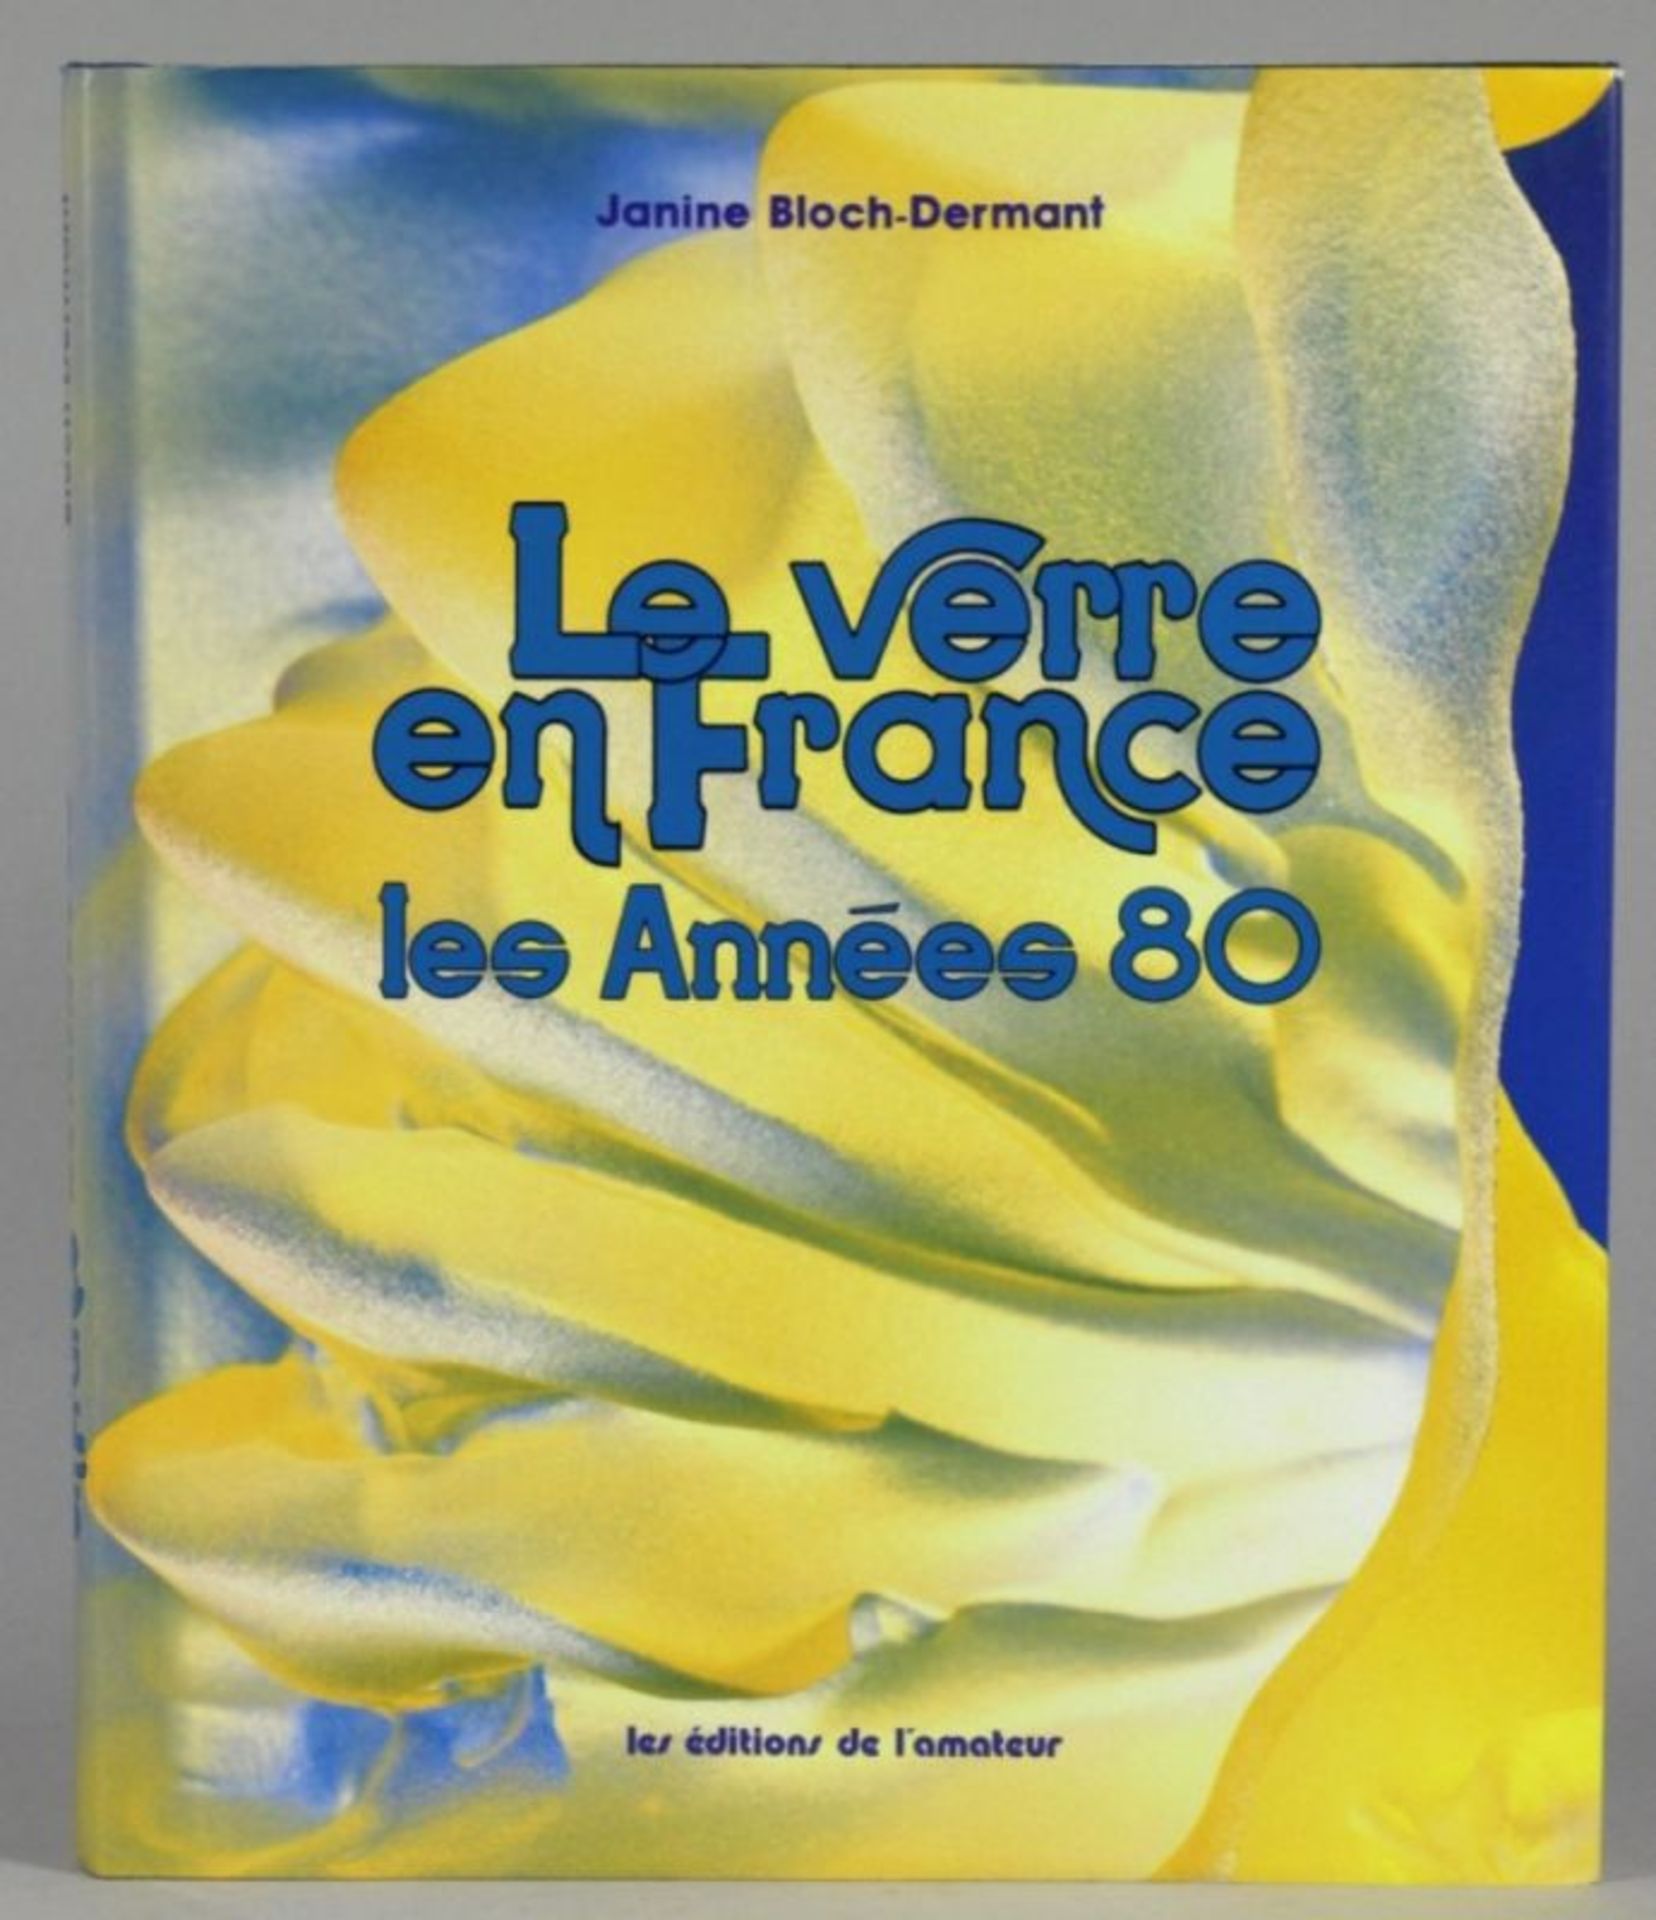 Buch, Le Verre en France les Annees 80, J.Bloch-Dermant, Paris,in französischer Sprachegeschrie